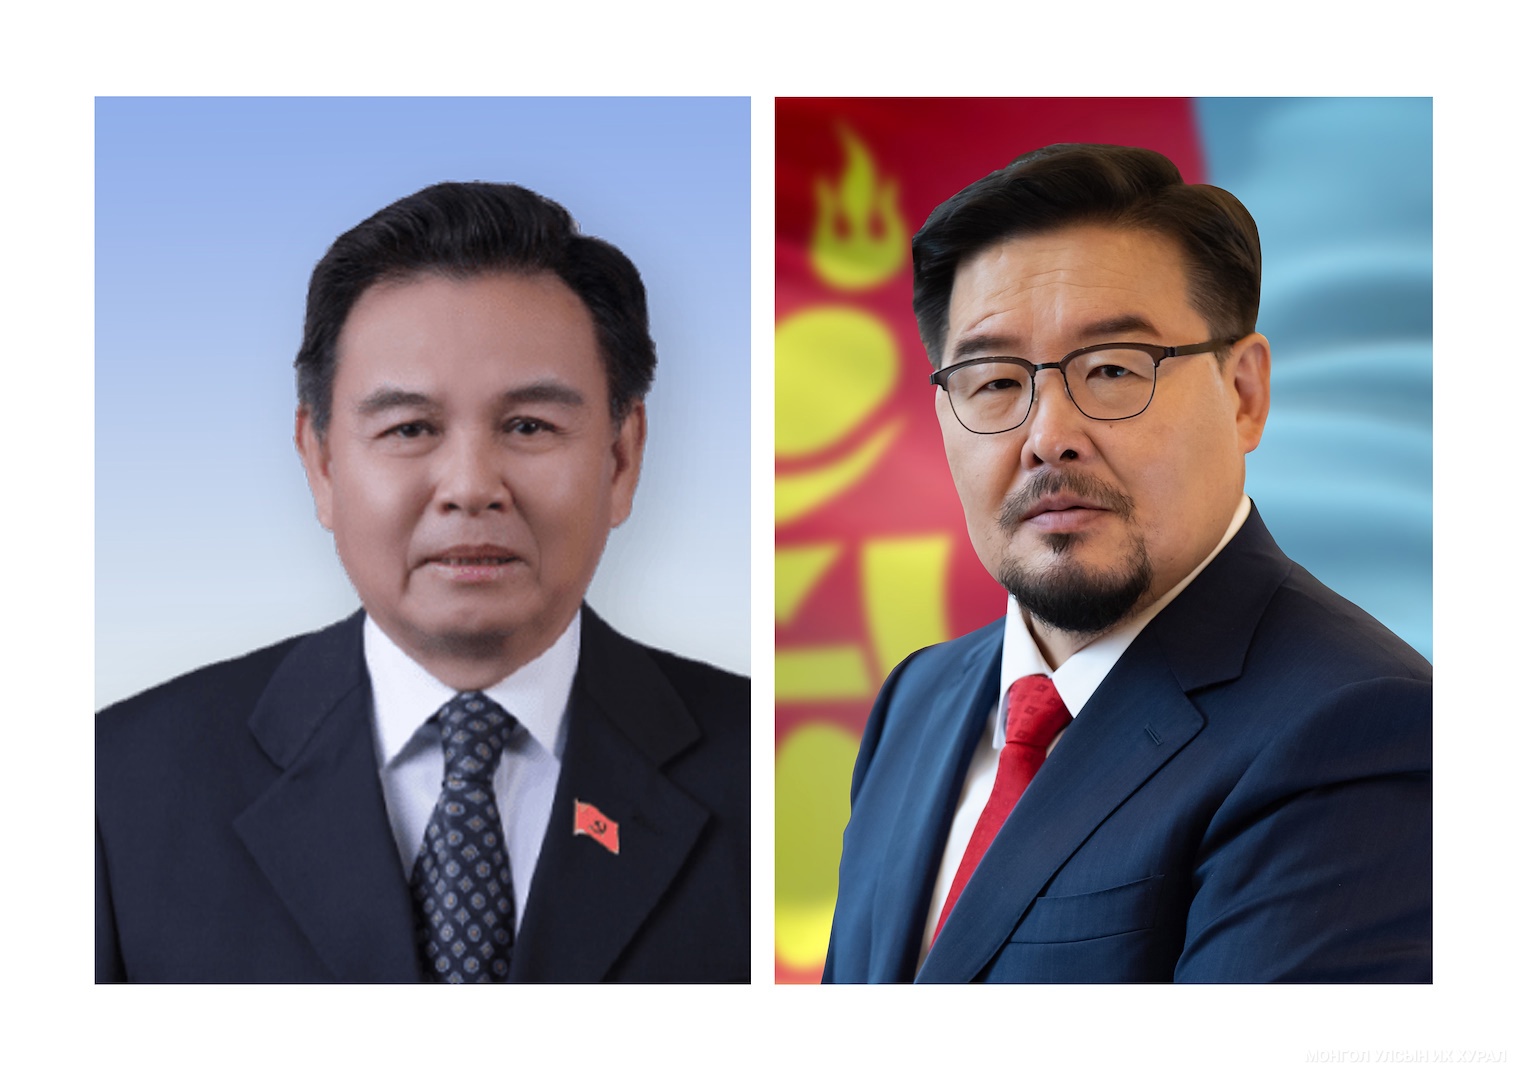 Бүгд Найрамдах Ардчилсан Лаос Ард Улсын Үндэсний Ассамблейн дарга Сайсумпон Фумвихан Монгол Улсад албан ёсны айлчлал хийнэ